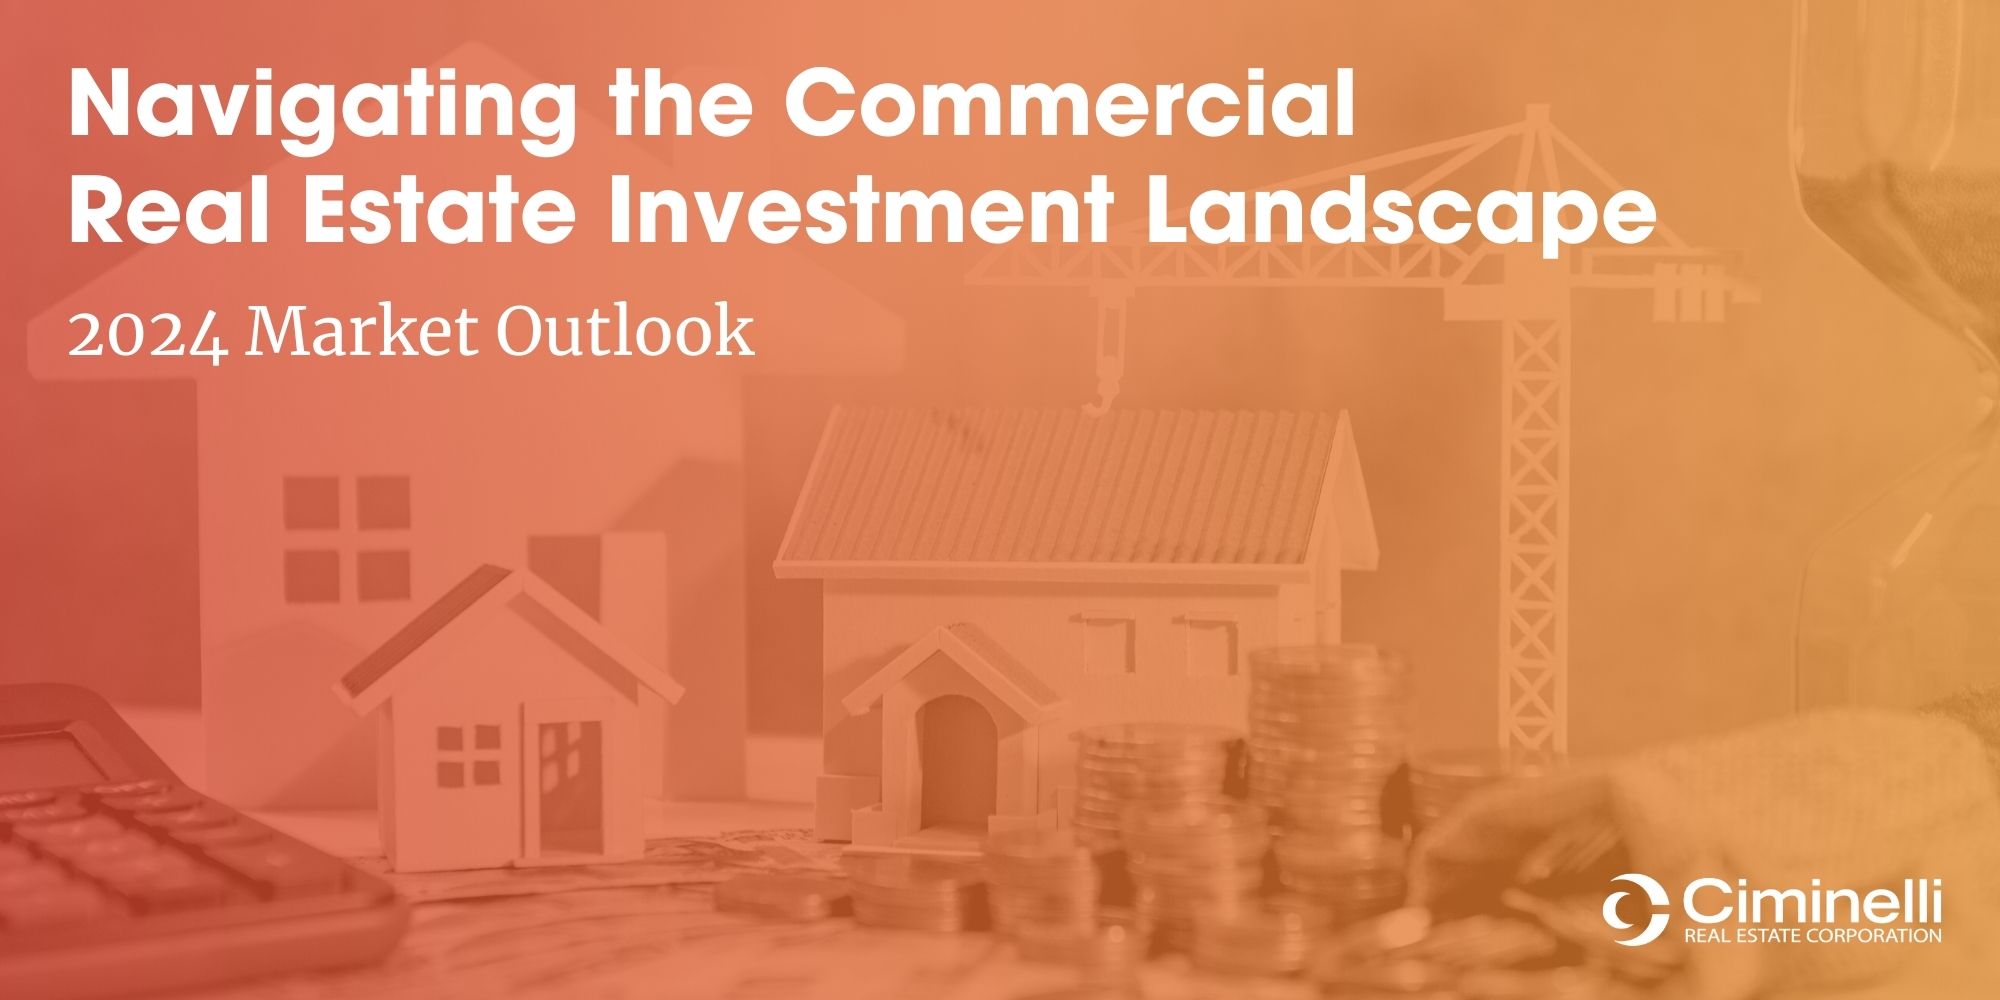 Navigating the Commercial Real Estate Investment Landscape: 2024 Market Outlook